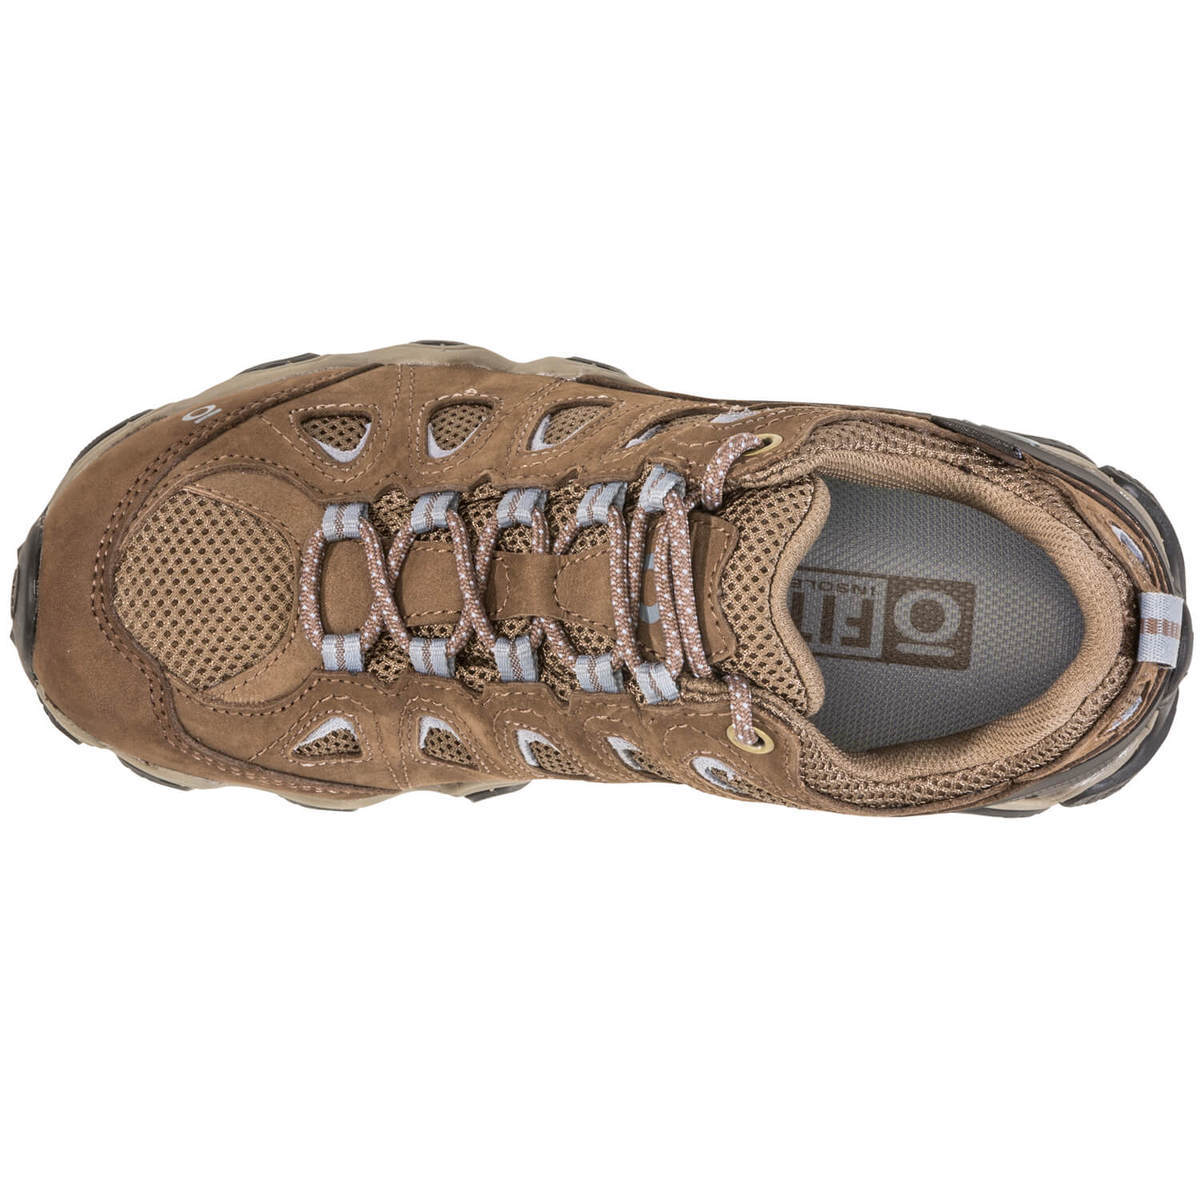 Oboz Women's Sawtooth II Waterproof Low Hiking Shoes | Sportsman's ...